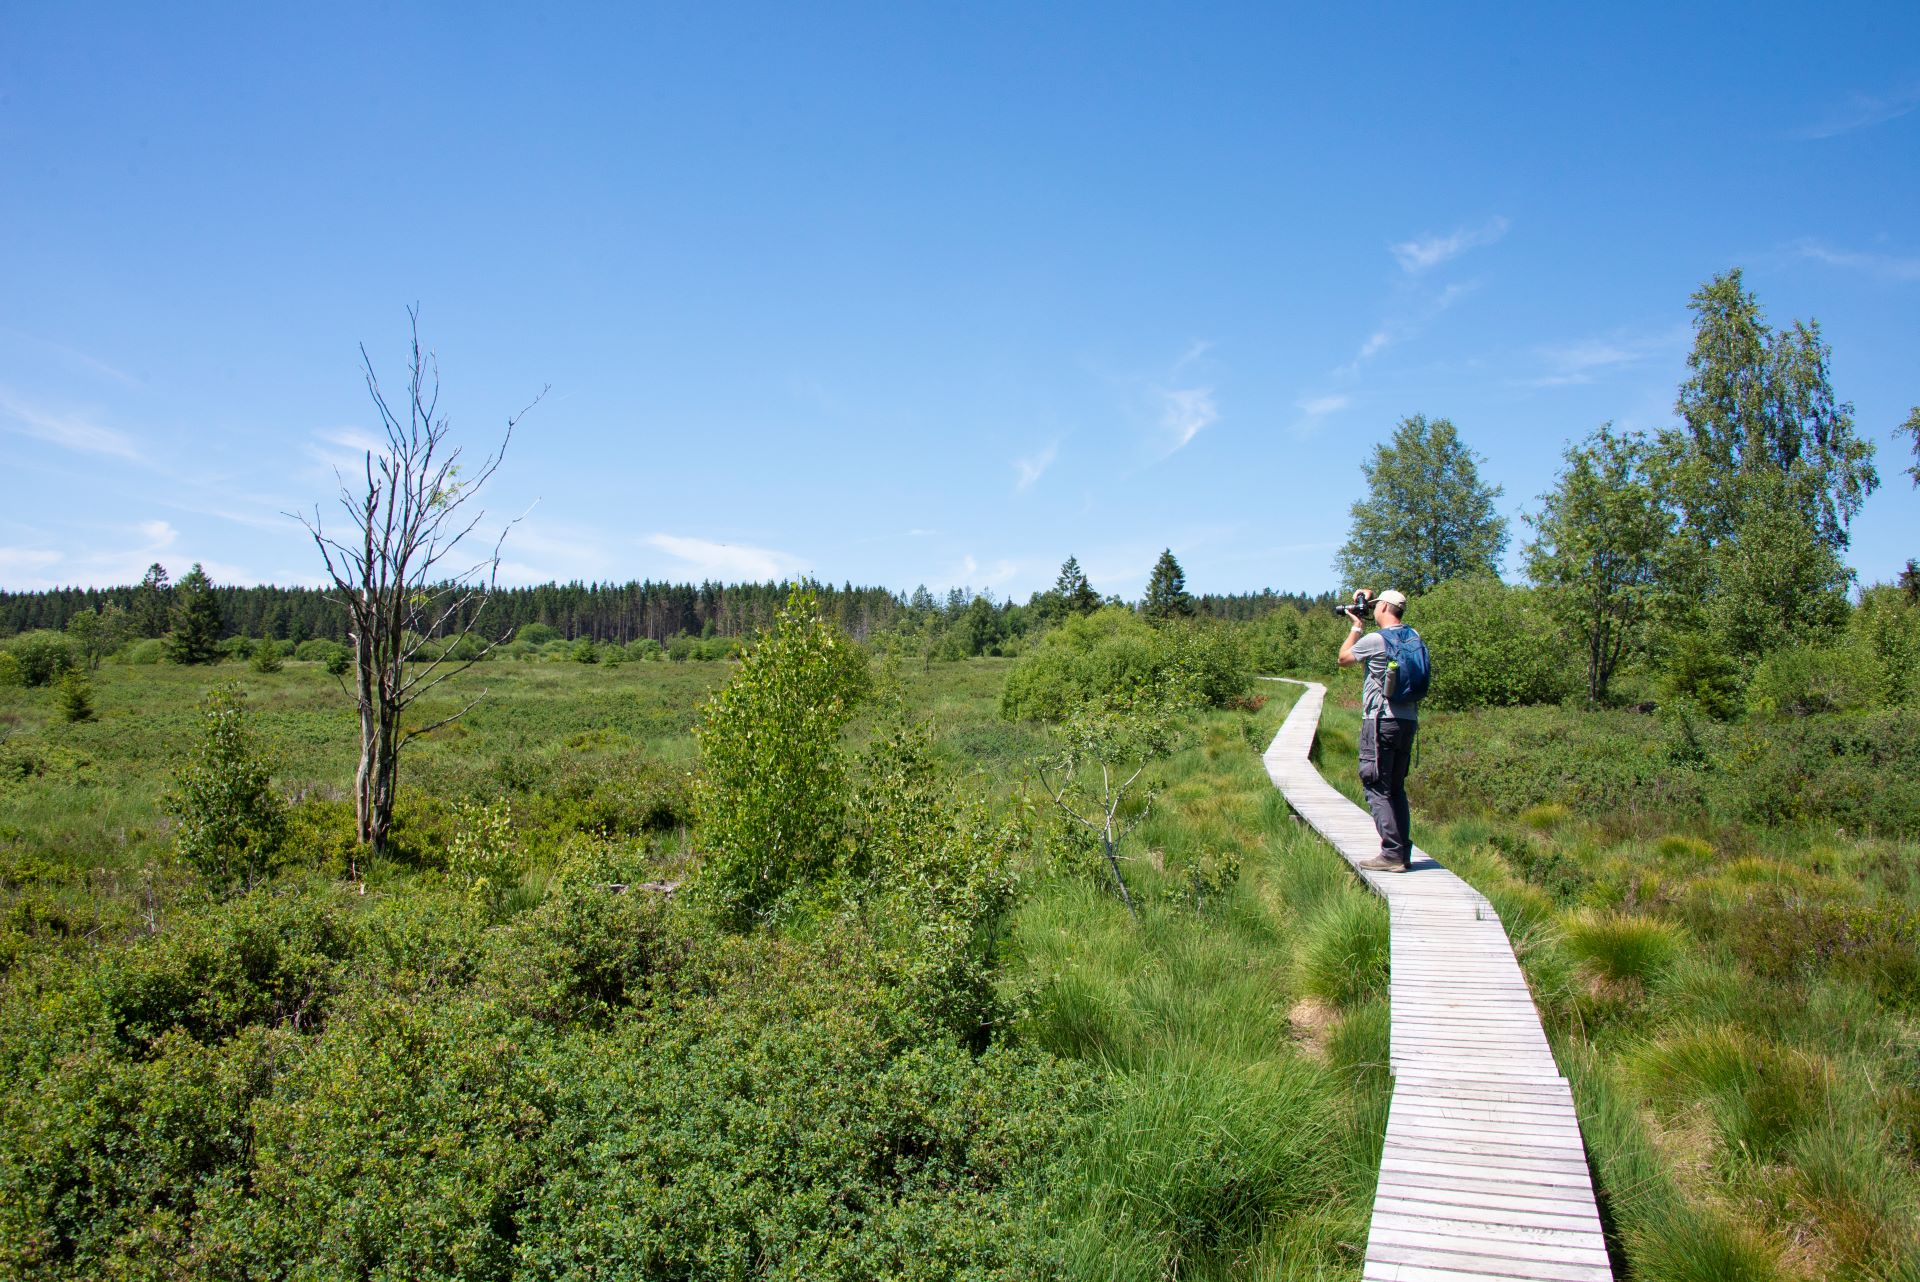 Le guide touristique se tient sur une promenade qui mène les randonneurs à travers le paysage vert. Les petits arbres sont peu visibles.